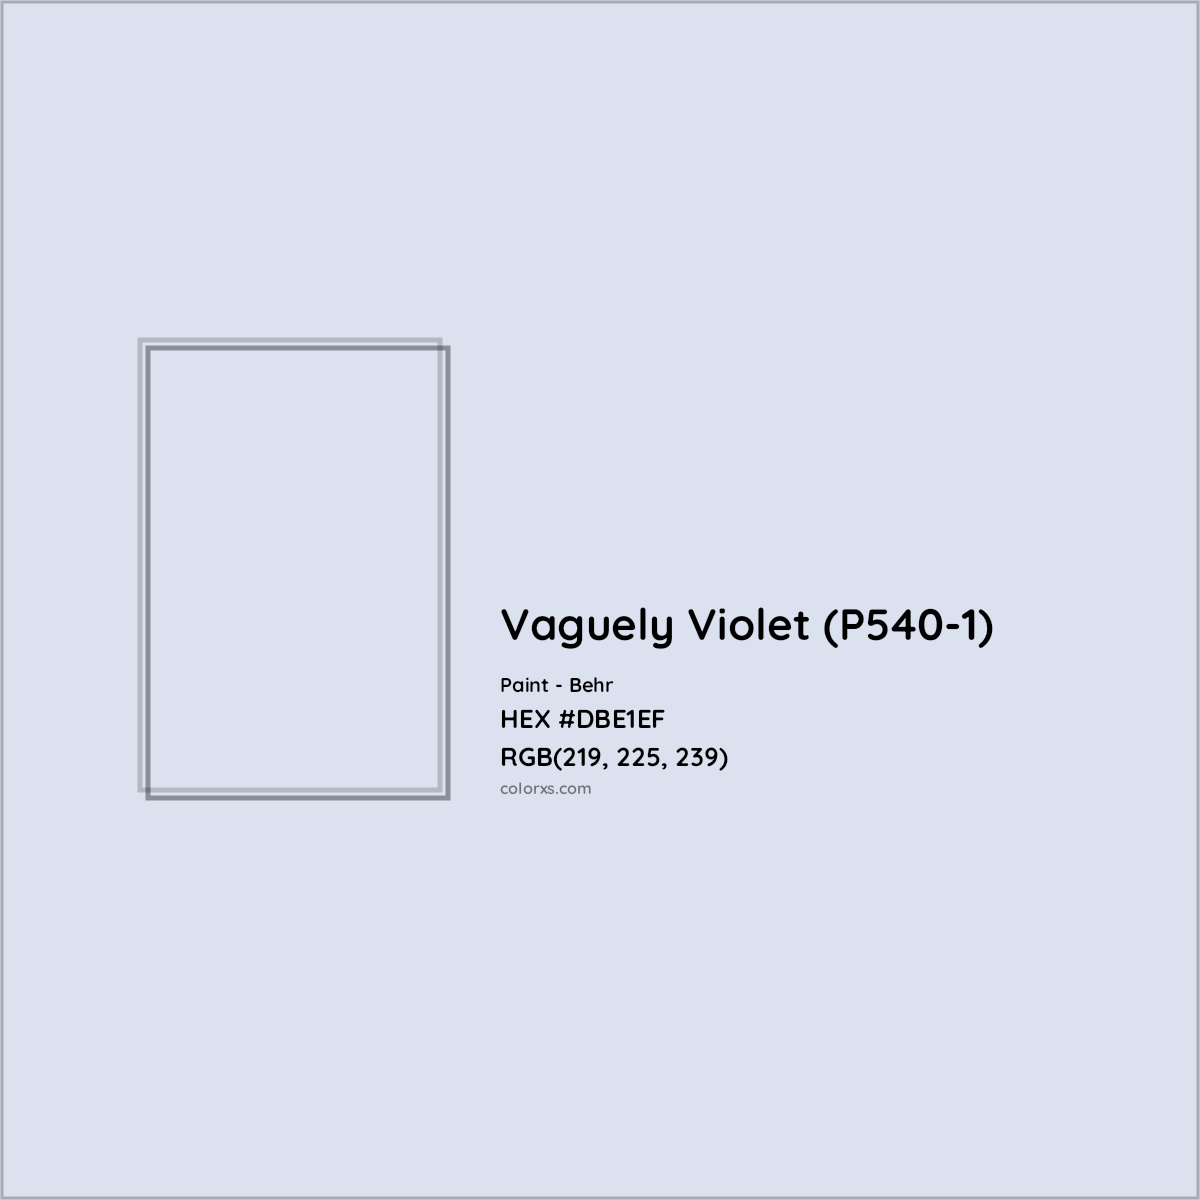 HEX #DBE1EF Vaguely Violet (P540-1) Paint Behr - Color Code